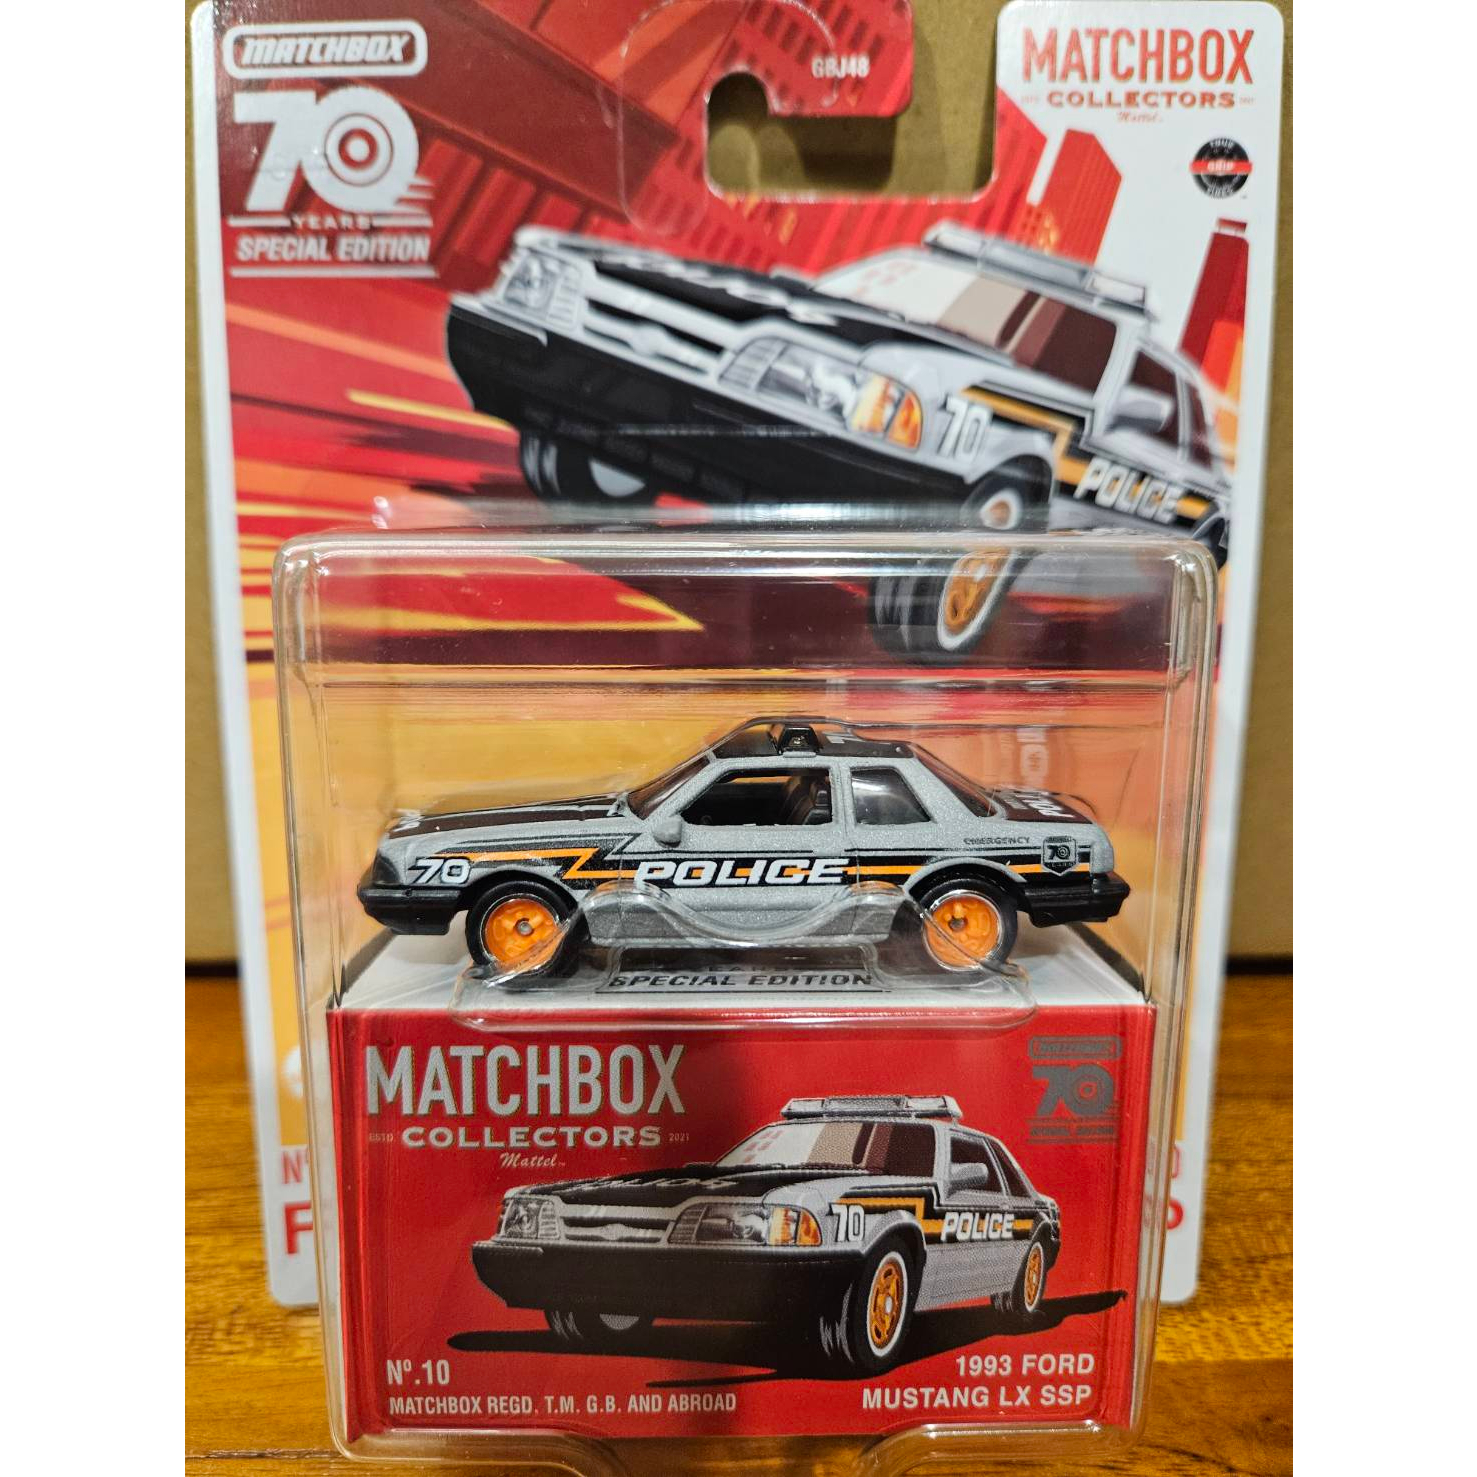 [玩三工作室] Matchbox 火柴盒 70週年 收藏小車系列 1993 Ford Mustang LX SSP警車